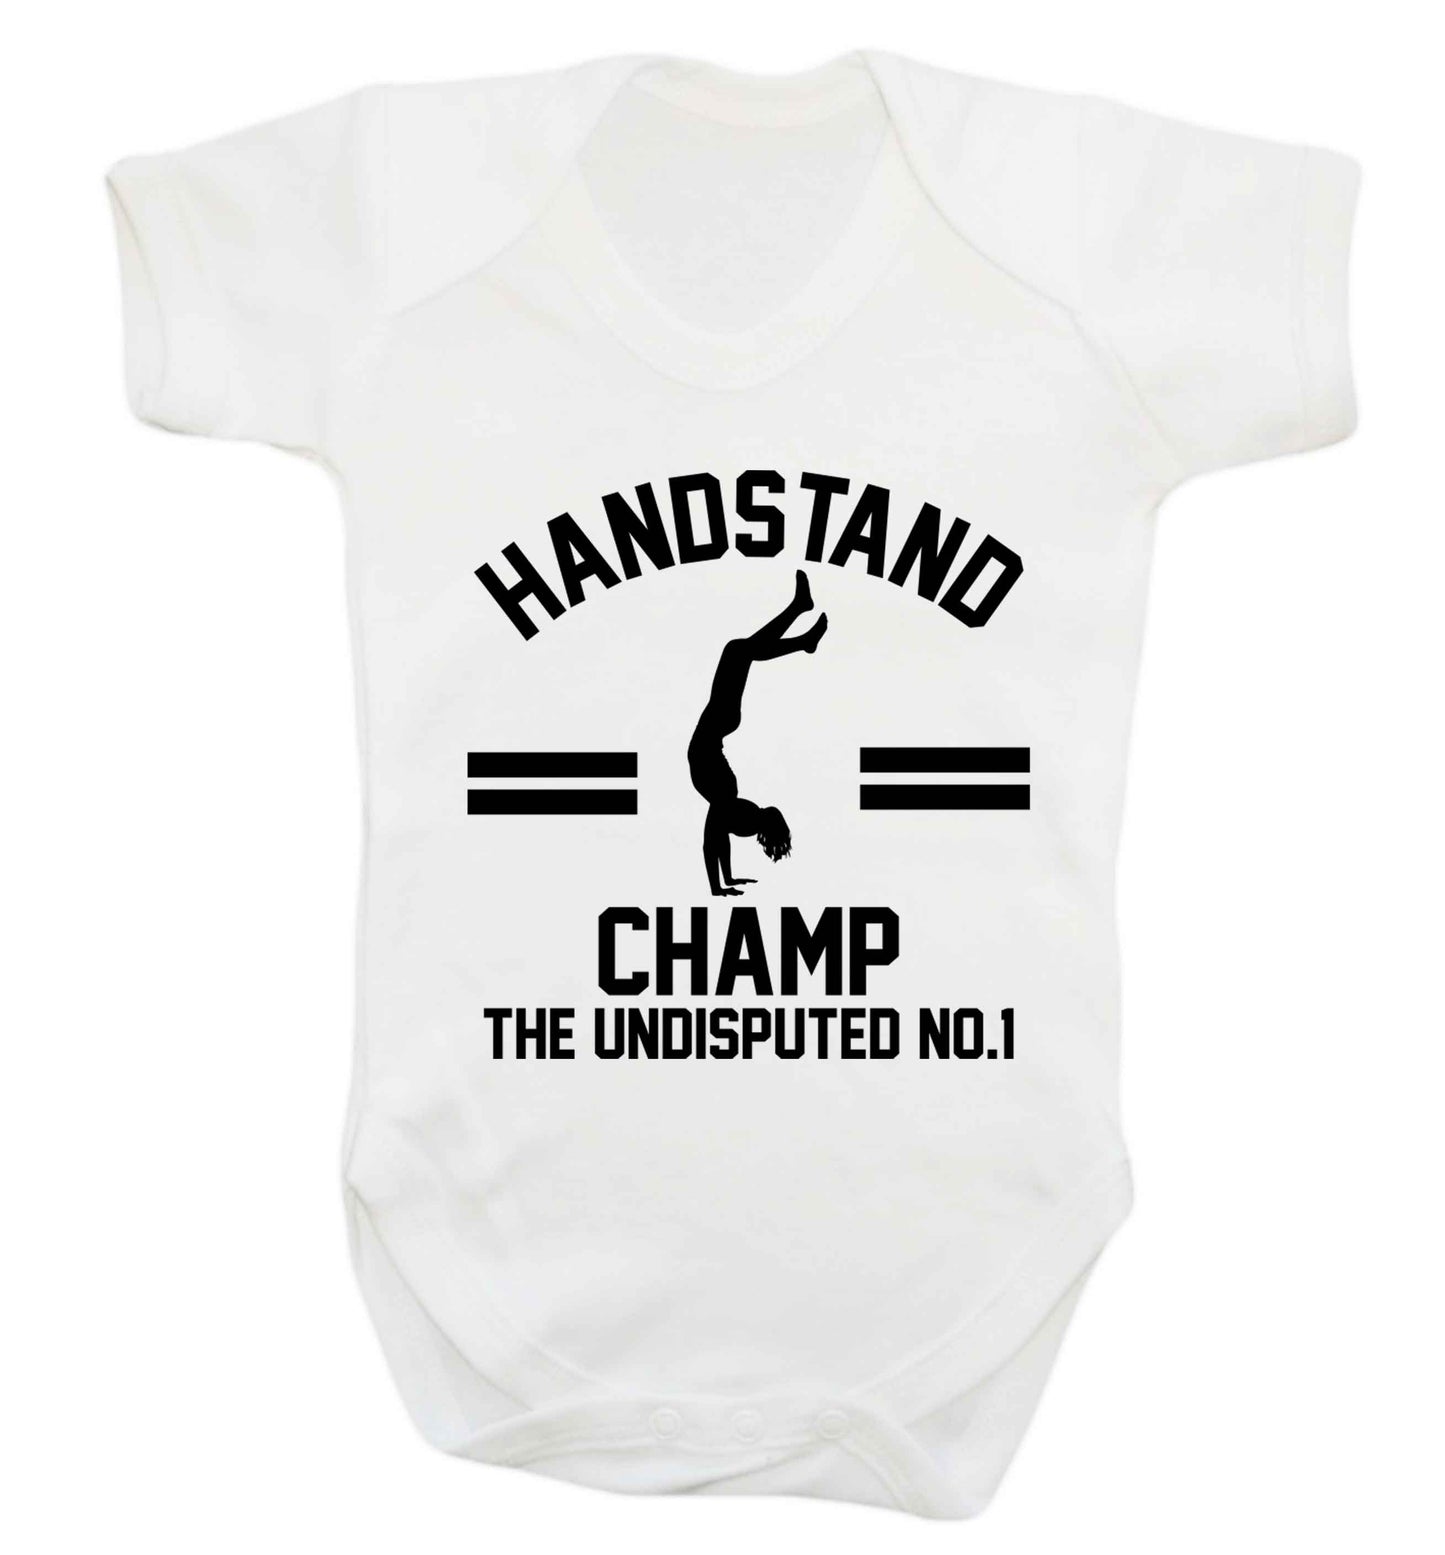 Undisputed handstand championship no.1  Baby Vest white 18-24 months